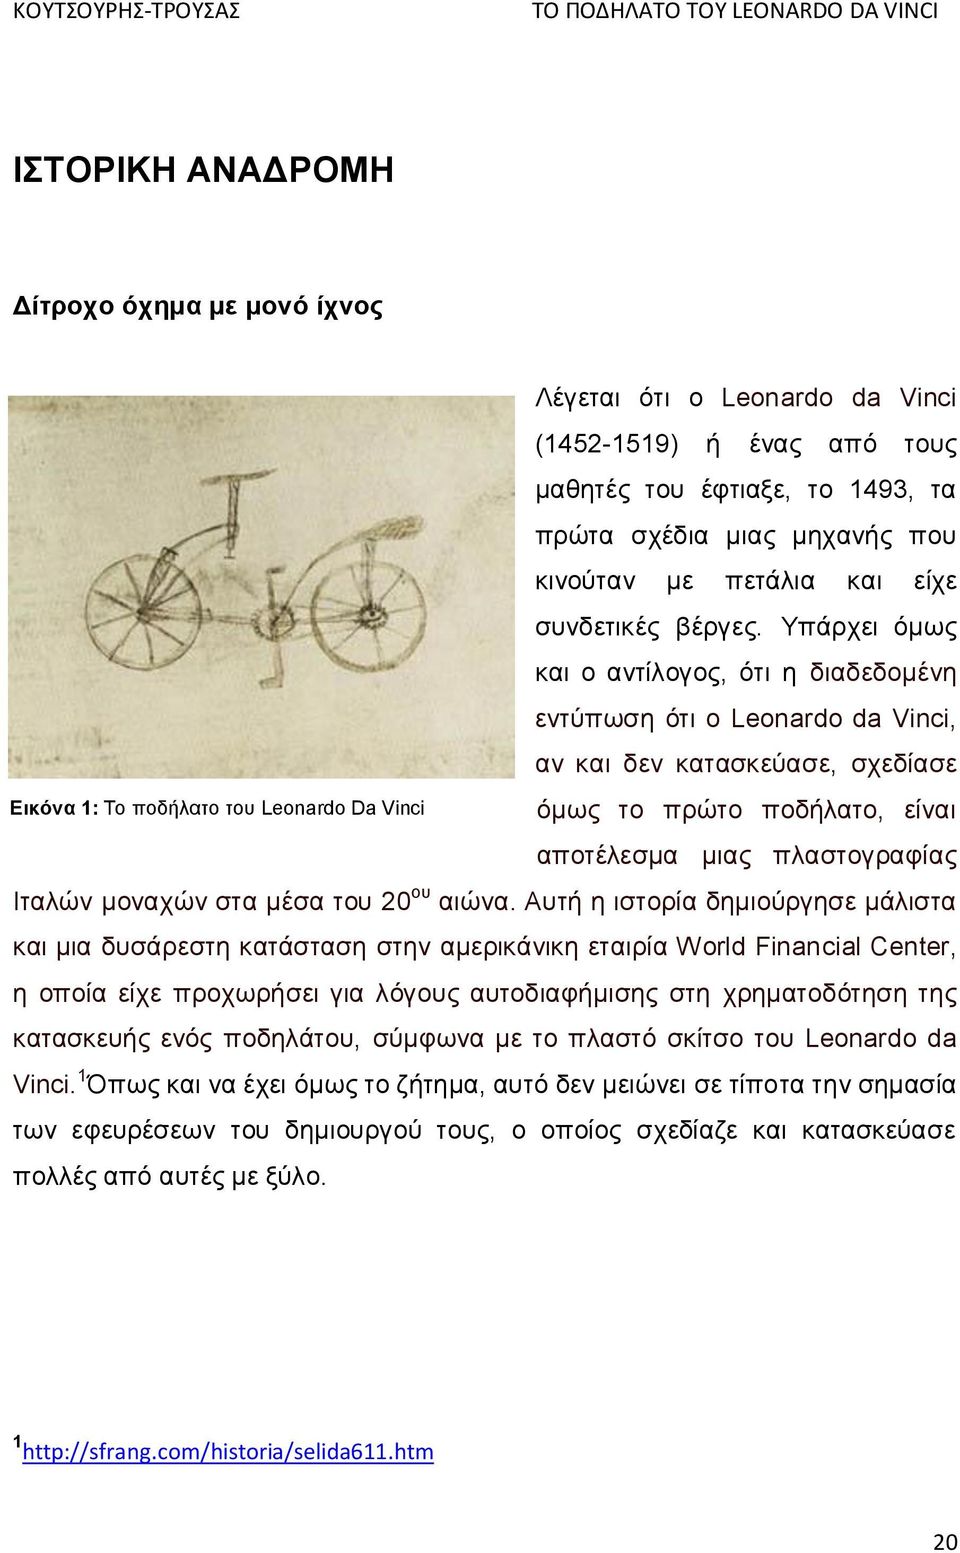 Υπάρχει όμως και ο αντίλογος, ότι η διαδεδομένη εντύπωση ότι ο Leonardo da Vinci, αν και δεν κατασκεύασε, σχεδίασε όμως το πρώτο ποδήλατο, είναι αποτέλεσμα μιας πλαστογραφίας Ιταλών μοναχών στα μέσα